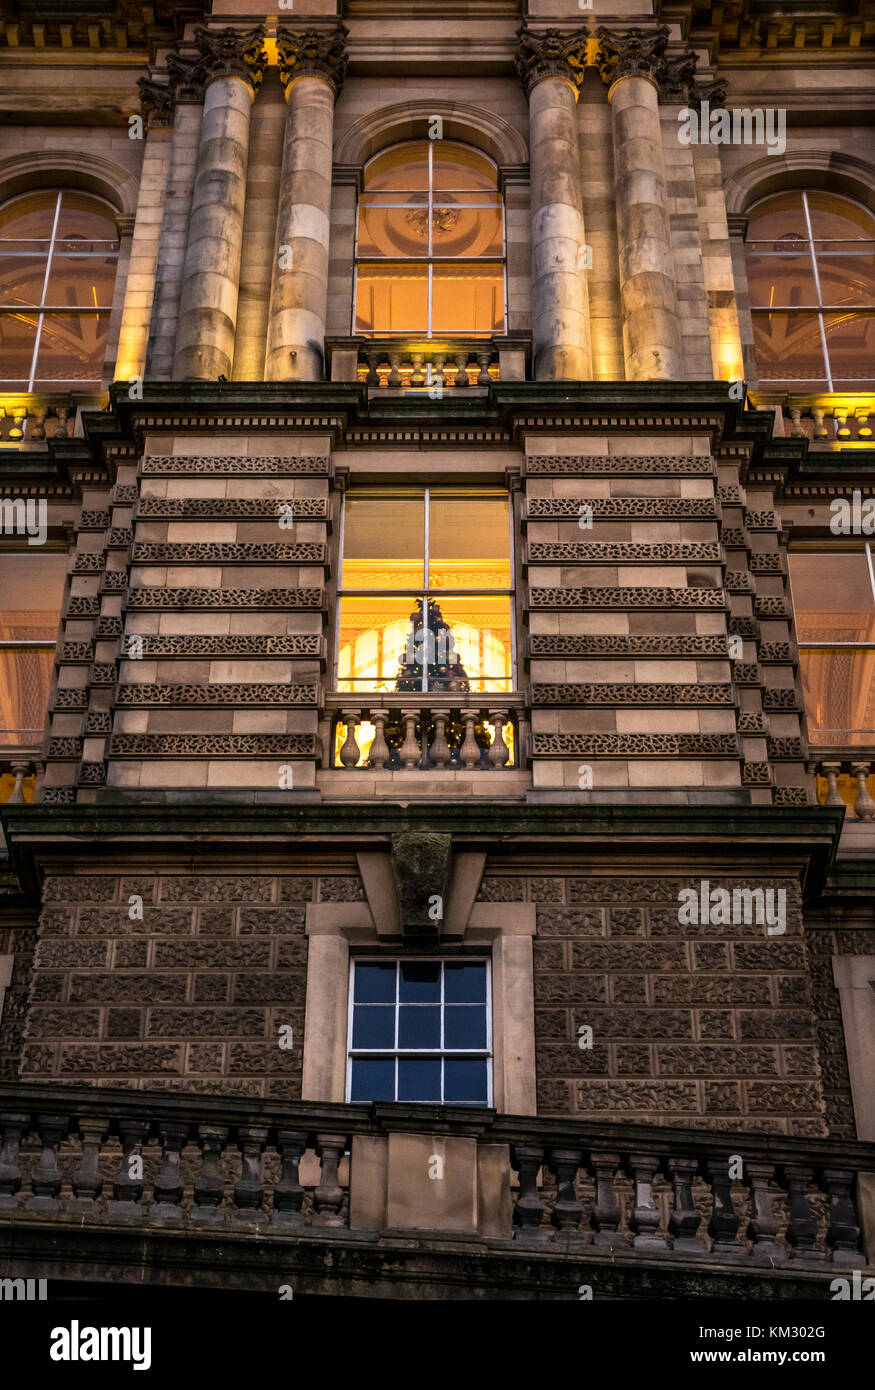 In der Nähe der viktorianischen Gebäude, Bank von Schottland Hauptquartier, die Hügel, die in der Dämmerung mit einem Weihnachtsbaum in Fenster, Edinburgh, Schottland, Großbritannien lit Stockfoto